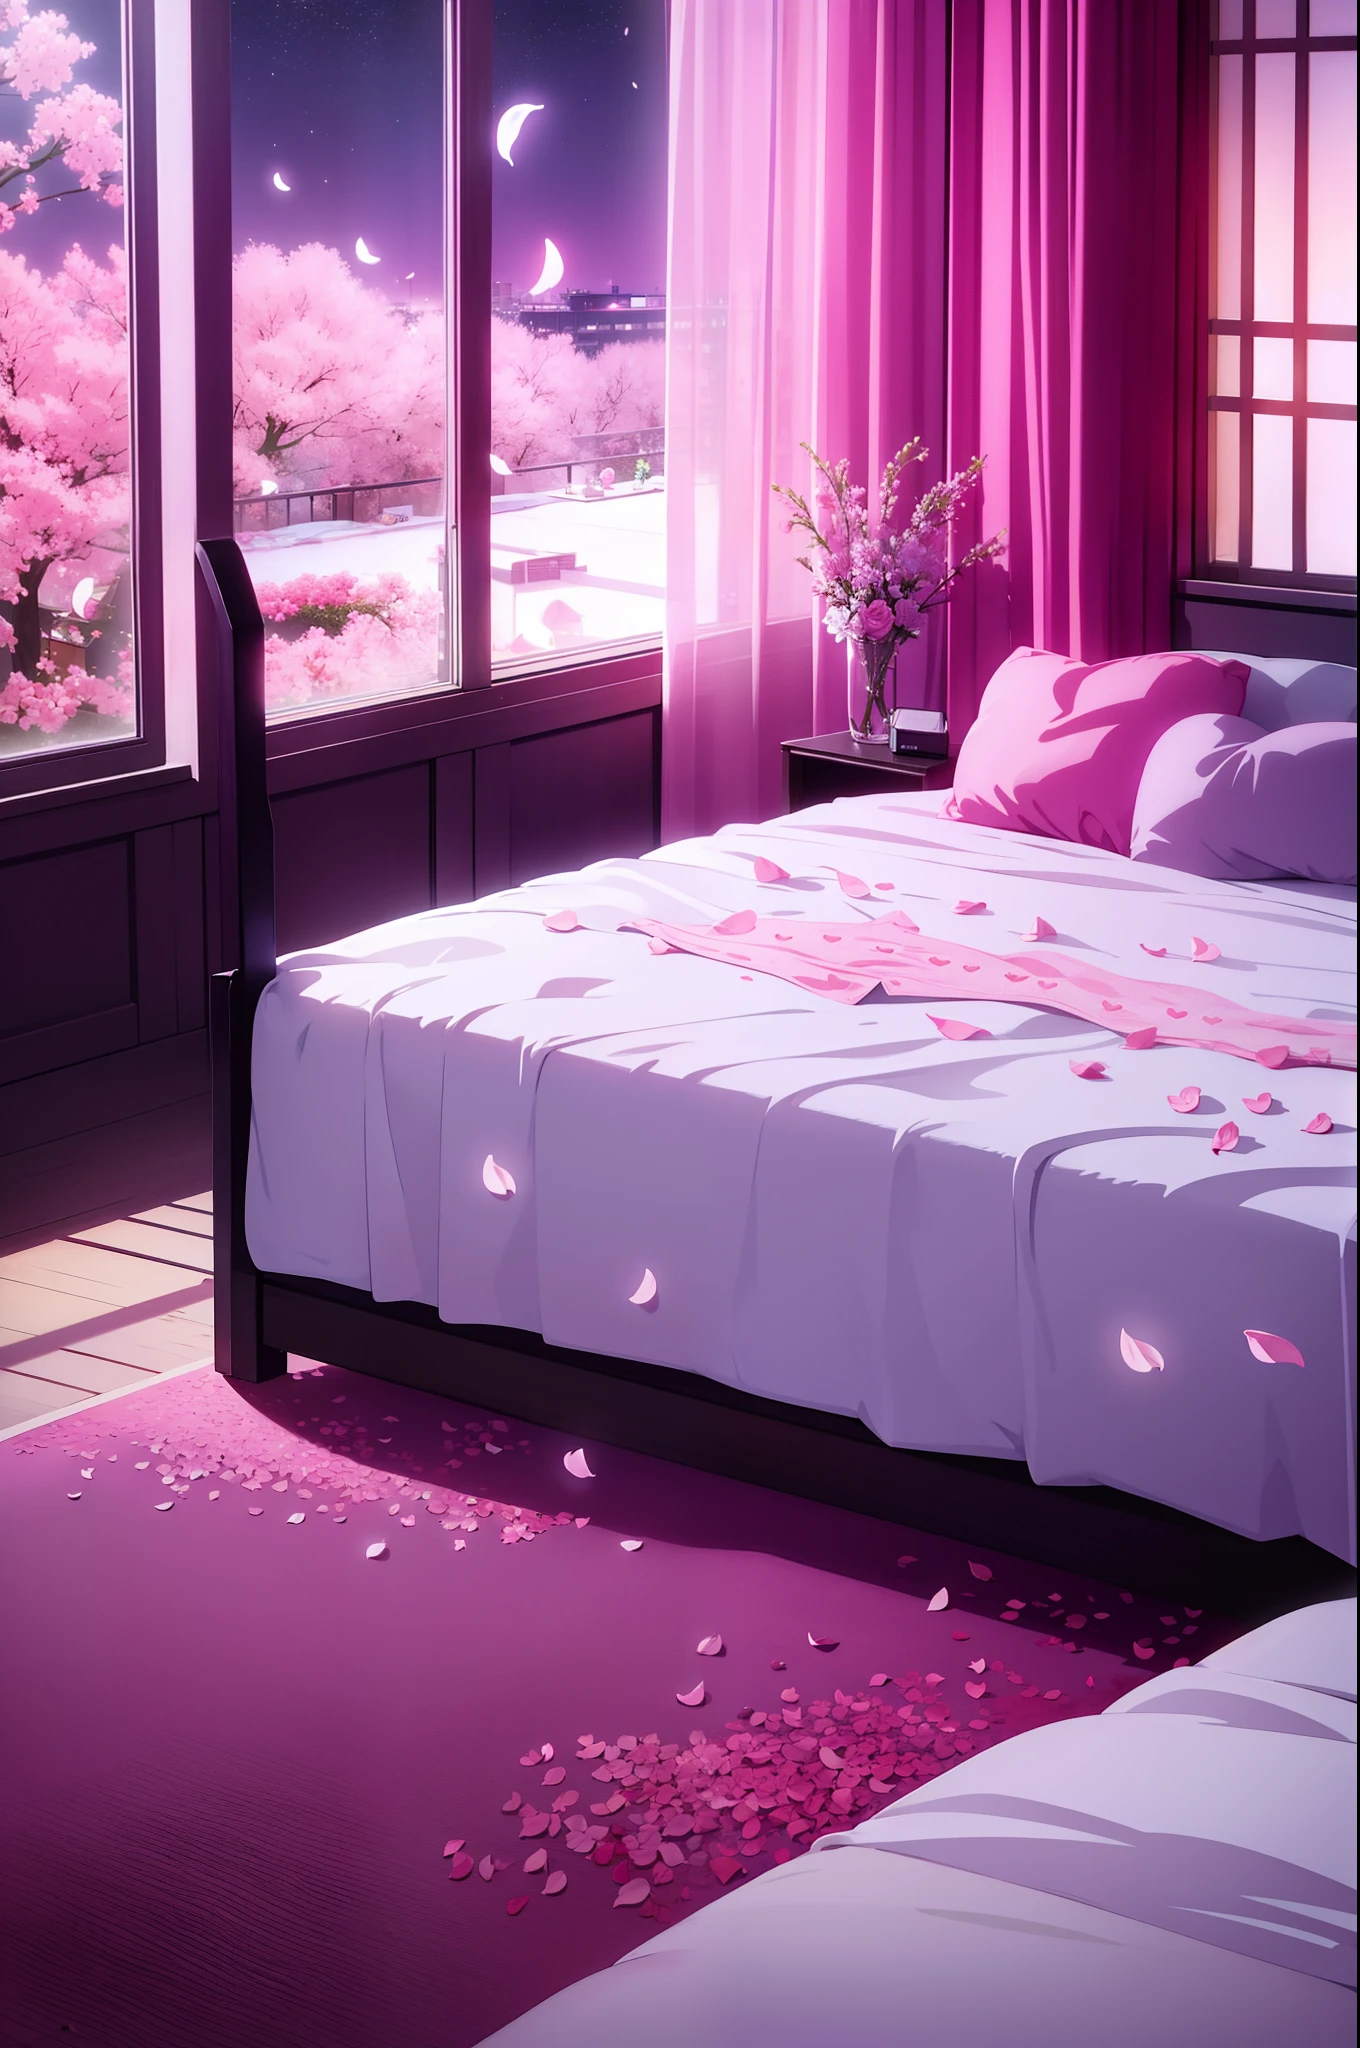 침대 위에 흩날리는 꽃잎이 있는 감각적인 객실 풍경, 하트 모양 침대, 창문에 밤하늘, 핑크빛, 러브호텔, 콘돔 자루, 젖은 침대